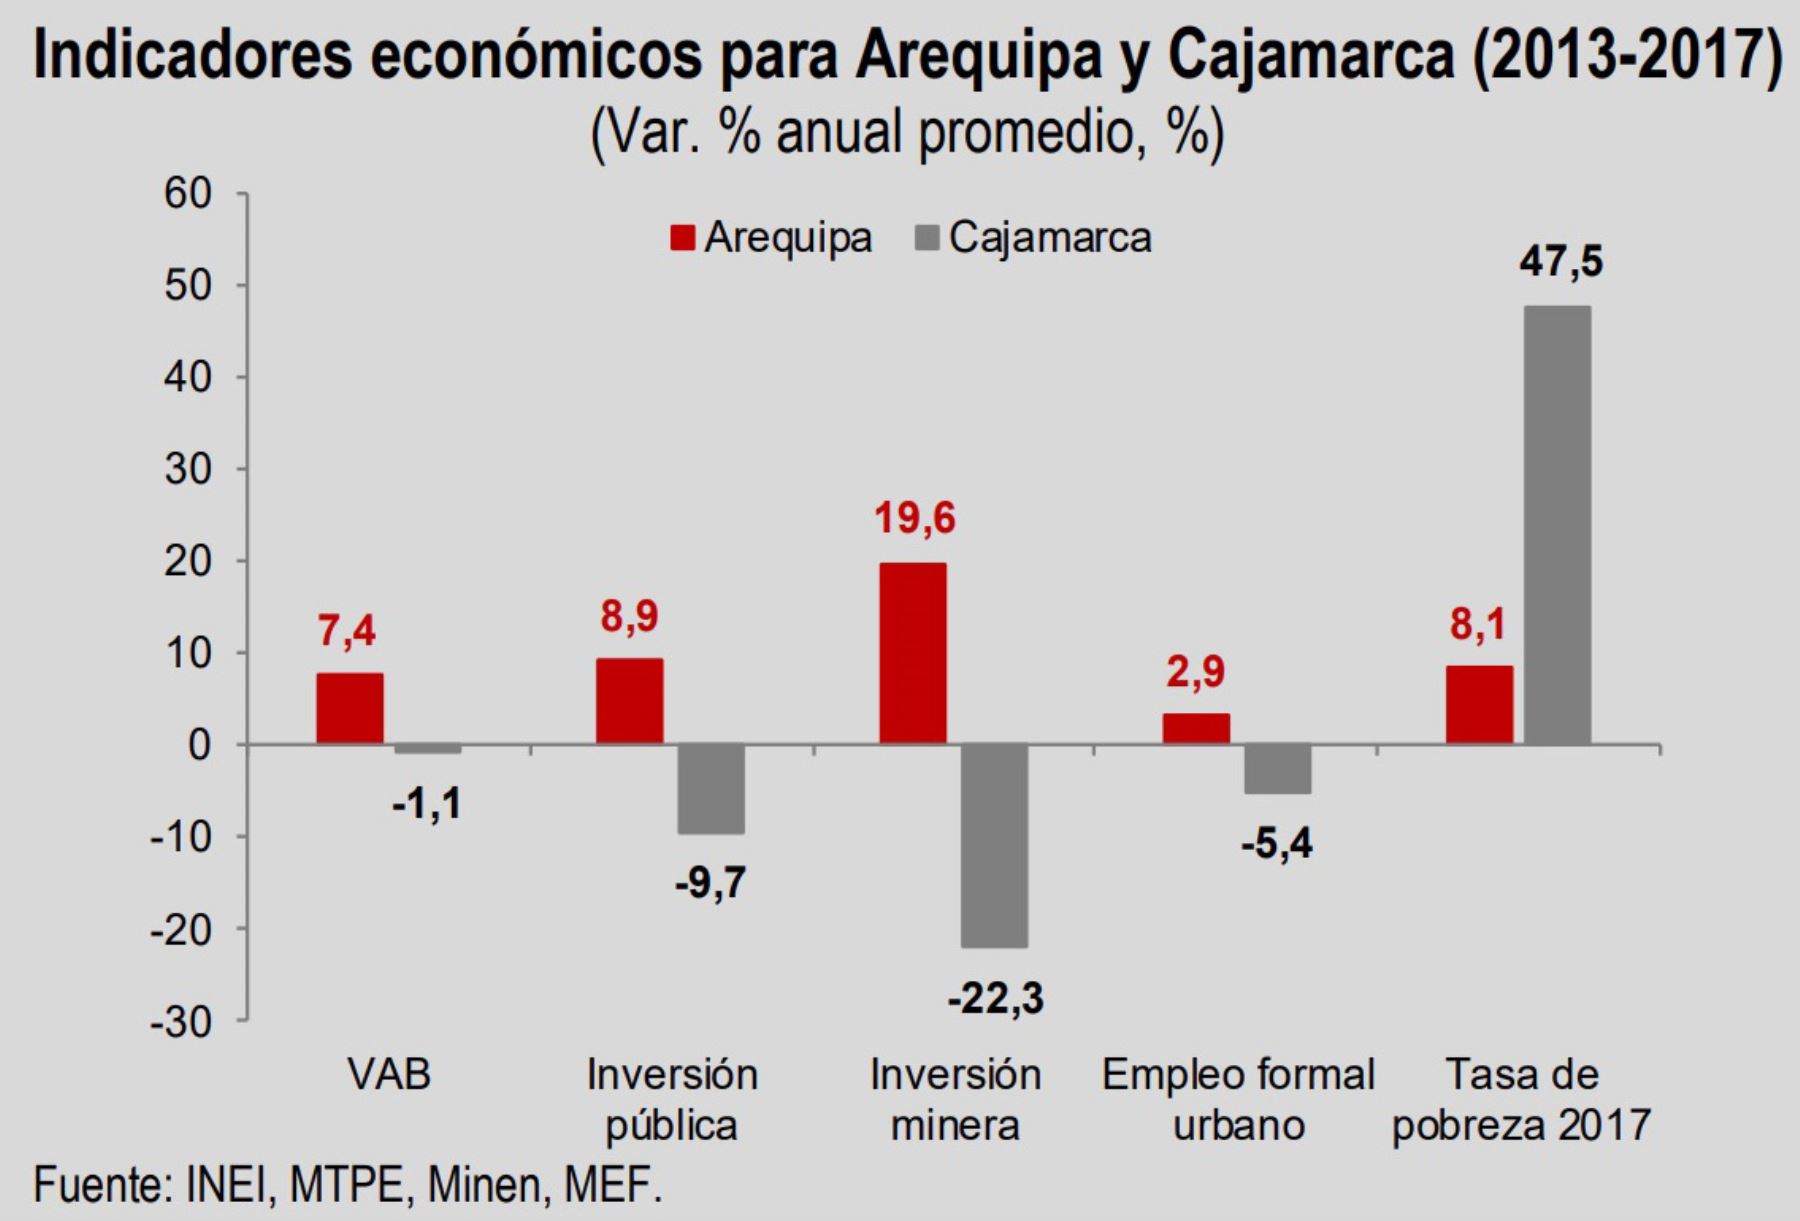 Entre 2004 y 2009, el incremento en el ingreso promedio real per cápita fue mayor en Arequipa que en Cajamarca (S/ 137 vs. S/ 77), lo cual derivó en una reducción de más de un tercio de la población pobre en Arequipa, pero solo una disminución de un décimo de la población pobre en Cajamarca.